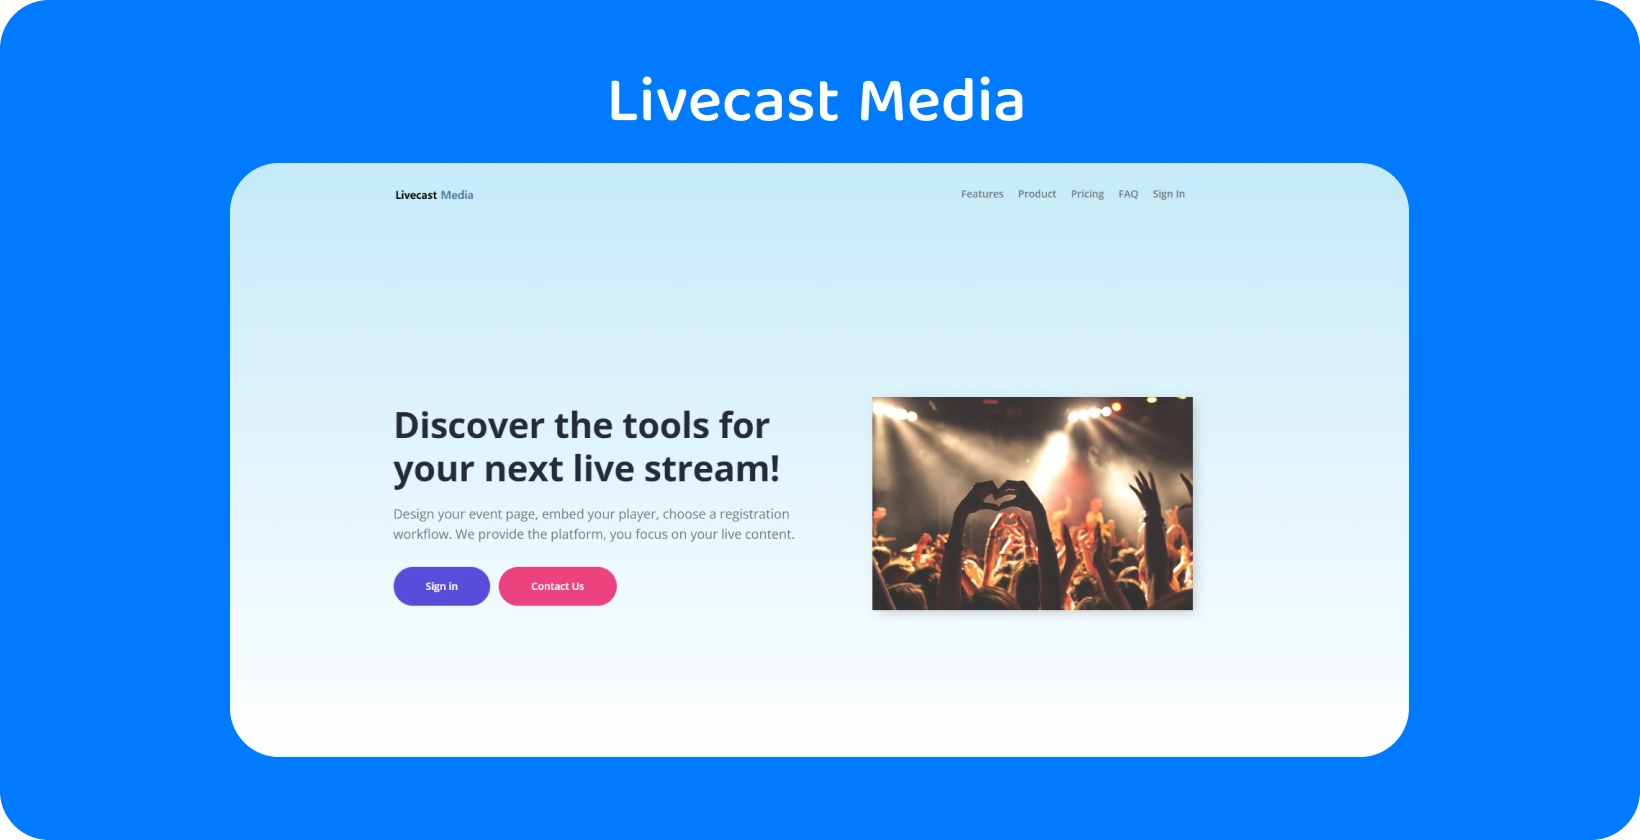 Αλληλεπιδράστε με το κοινό χρησιμοποιώντας τα εργαλεία ροής της Livecast Media, ιδανικά για τη δημιουργία αξέχαστων ζωντανών εκδηλώσεων.